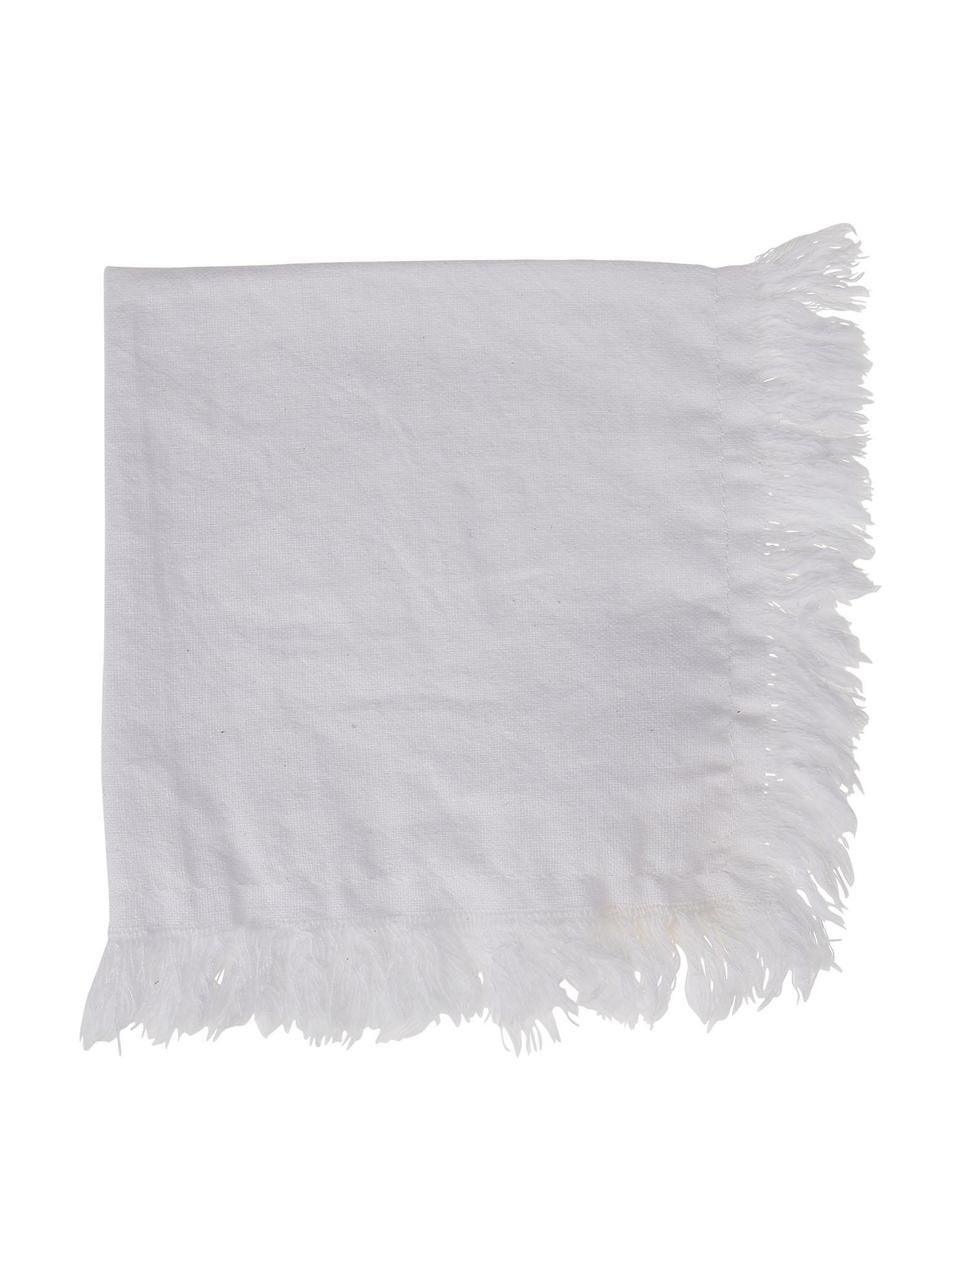 Serwetka z bawełny z frędzlami Nalia, 2 szt., 100% bawełna, Biały, S 35 x D 35 cm